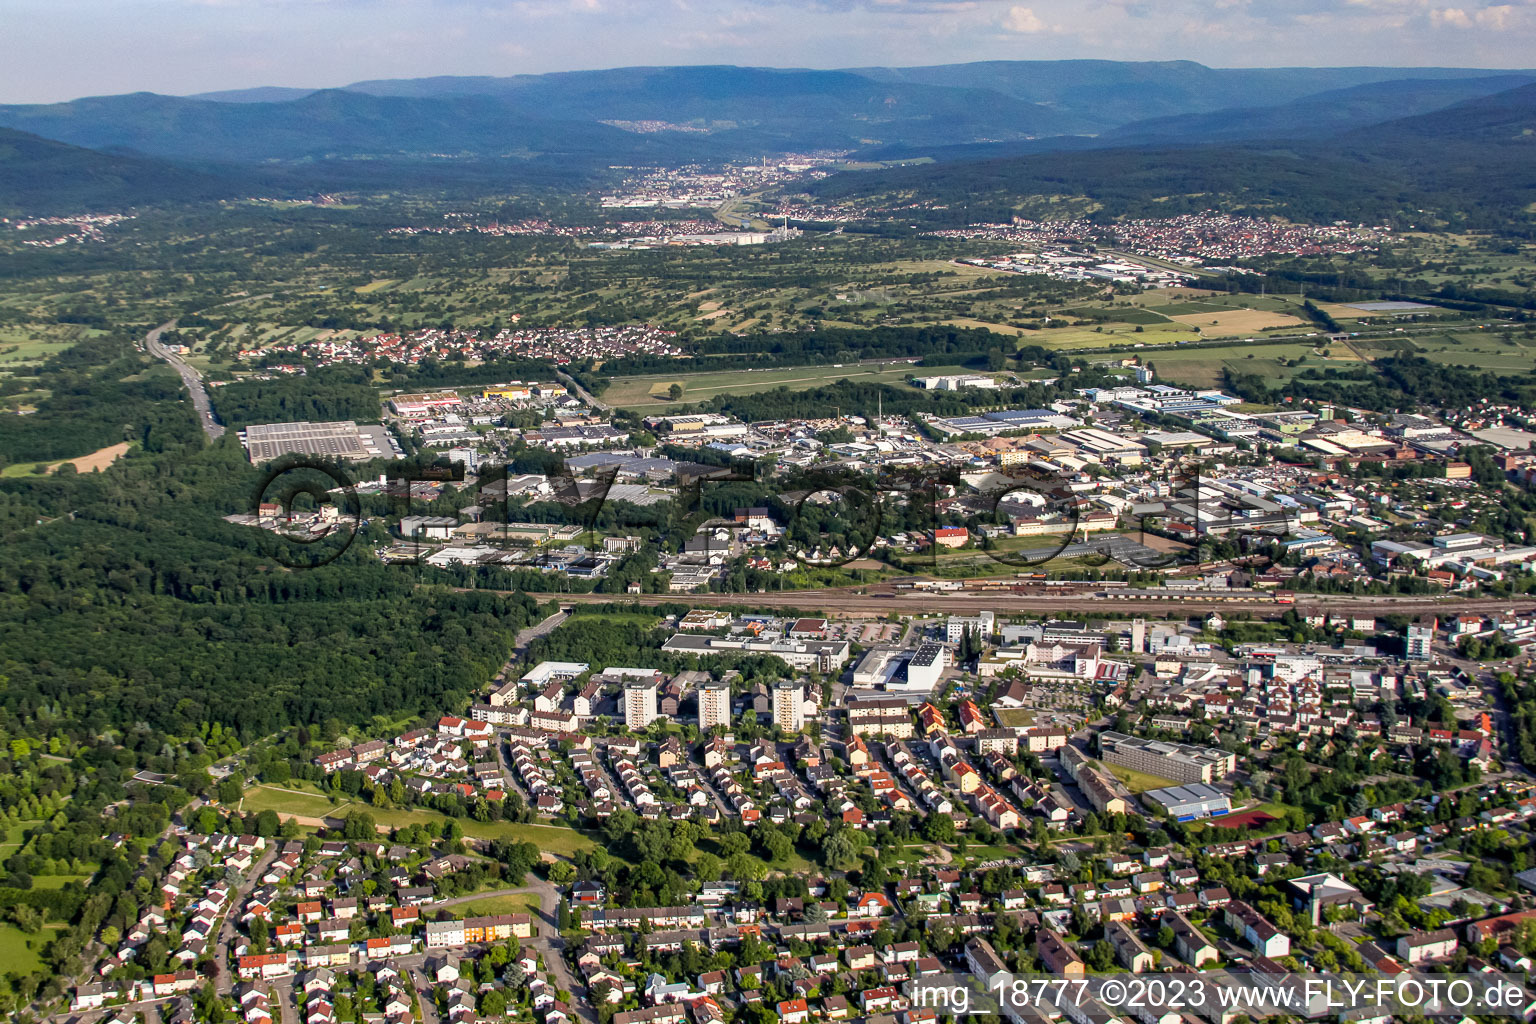 Rastatt im Bundesland Baden-Württemberg, Deutschland aus der Luft betrachtet